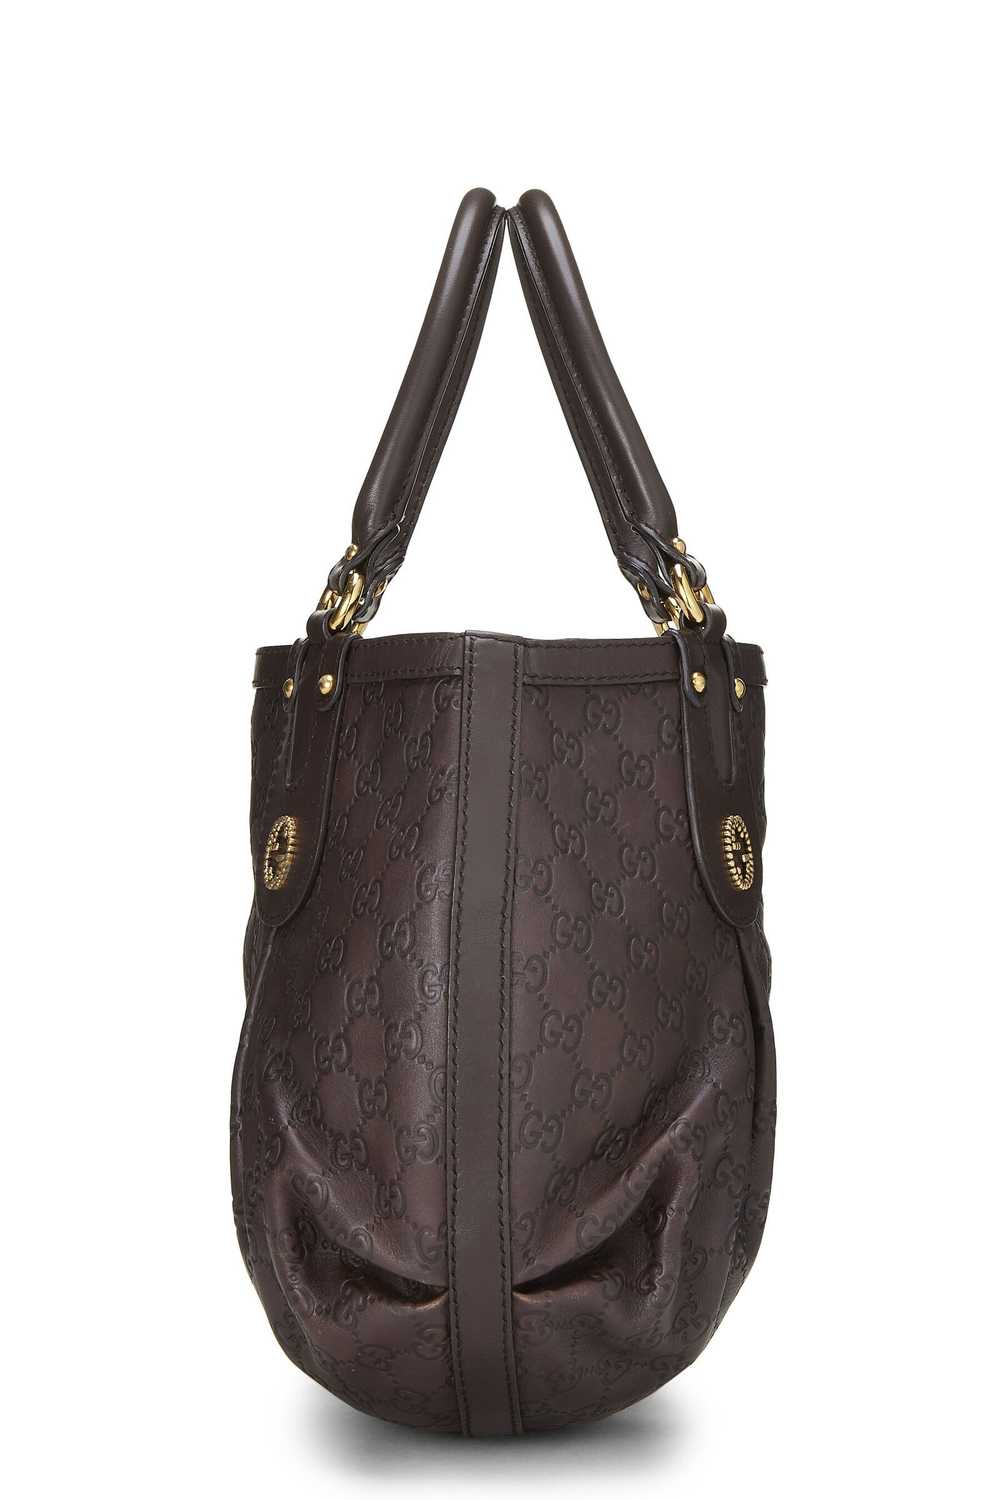 Brown Guccissima Beaded Studded Handbag - image 3